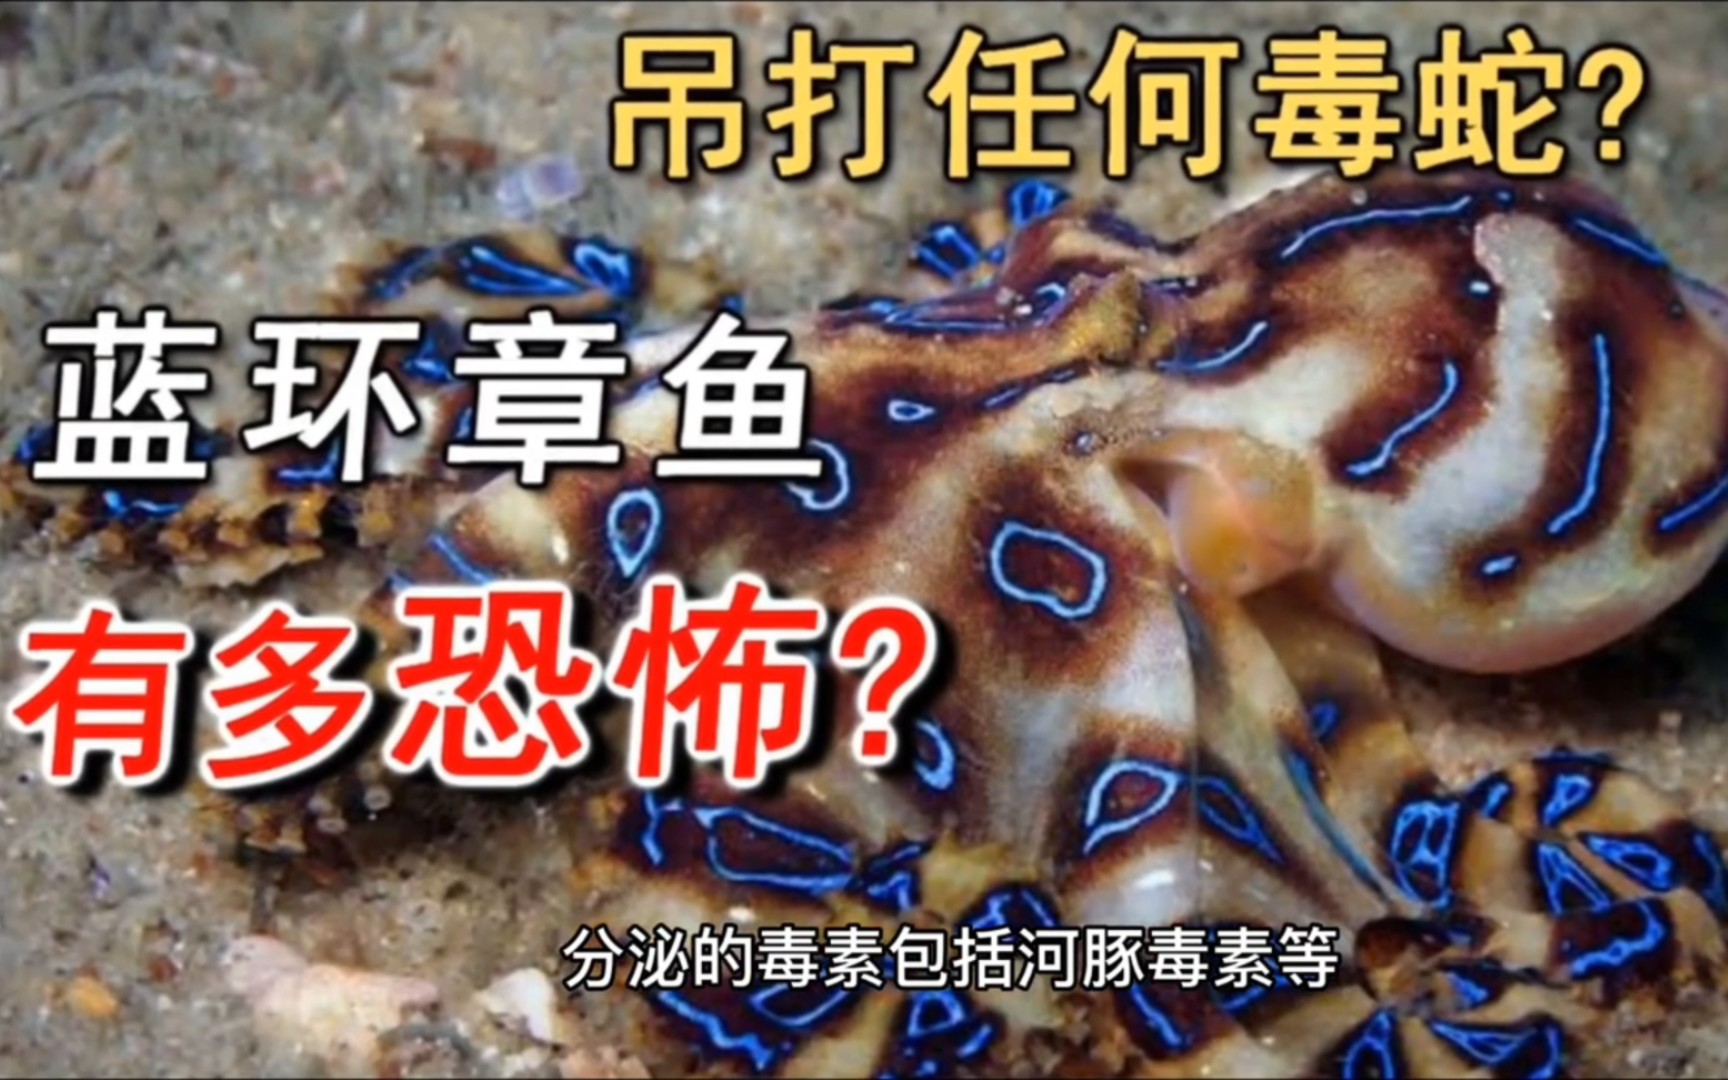 吃烤串发现蓝环章鱼图片